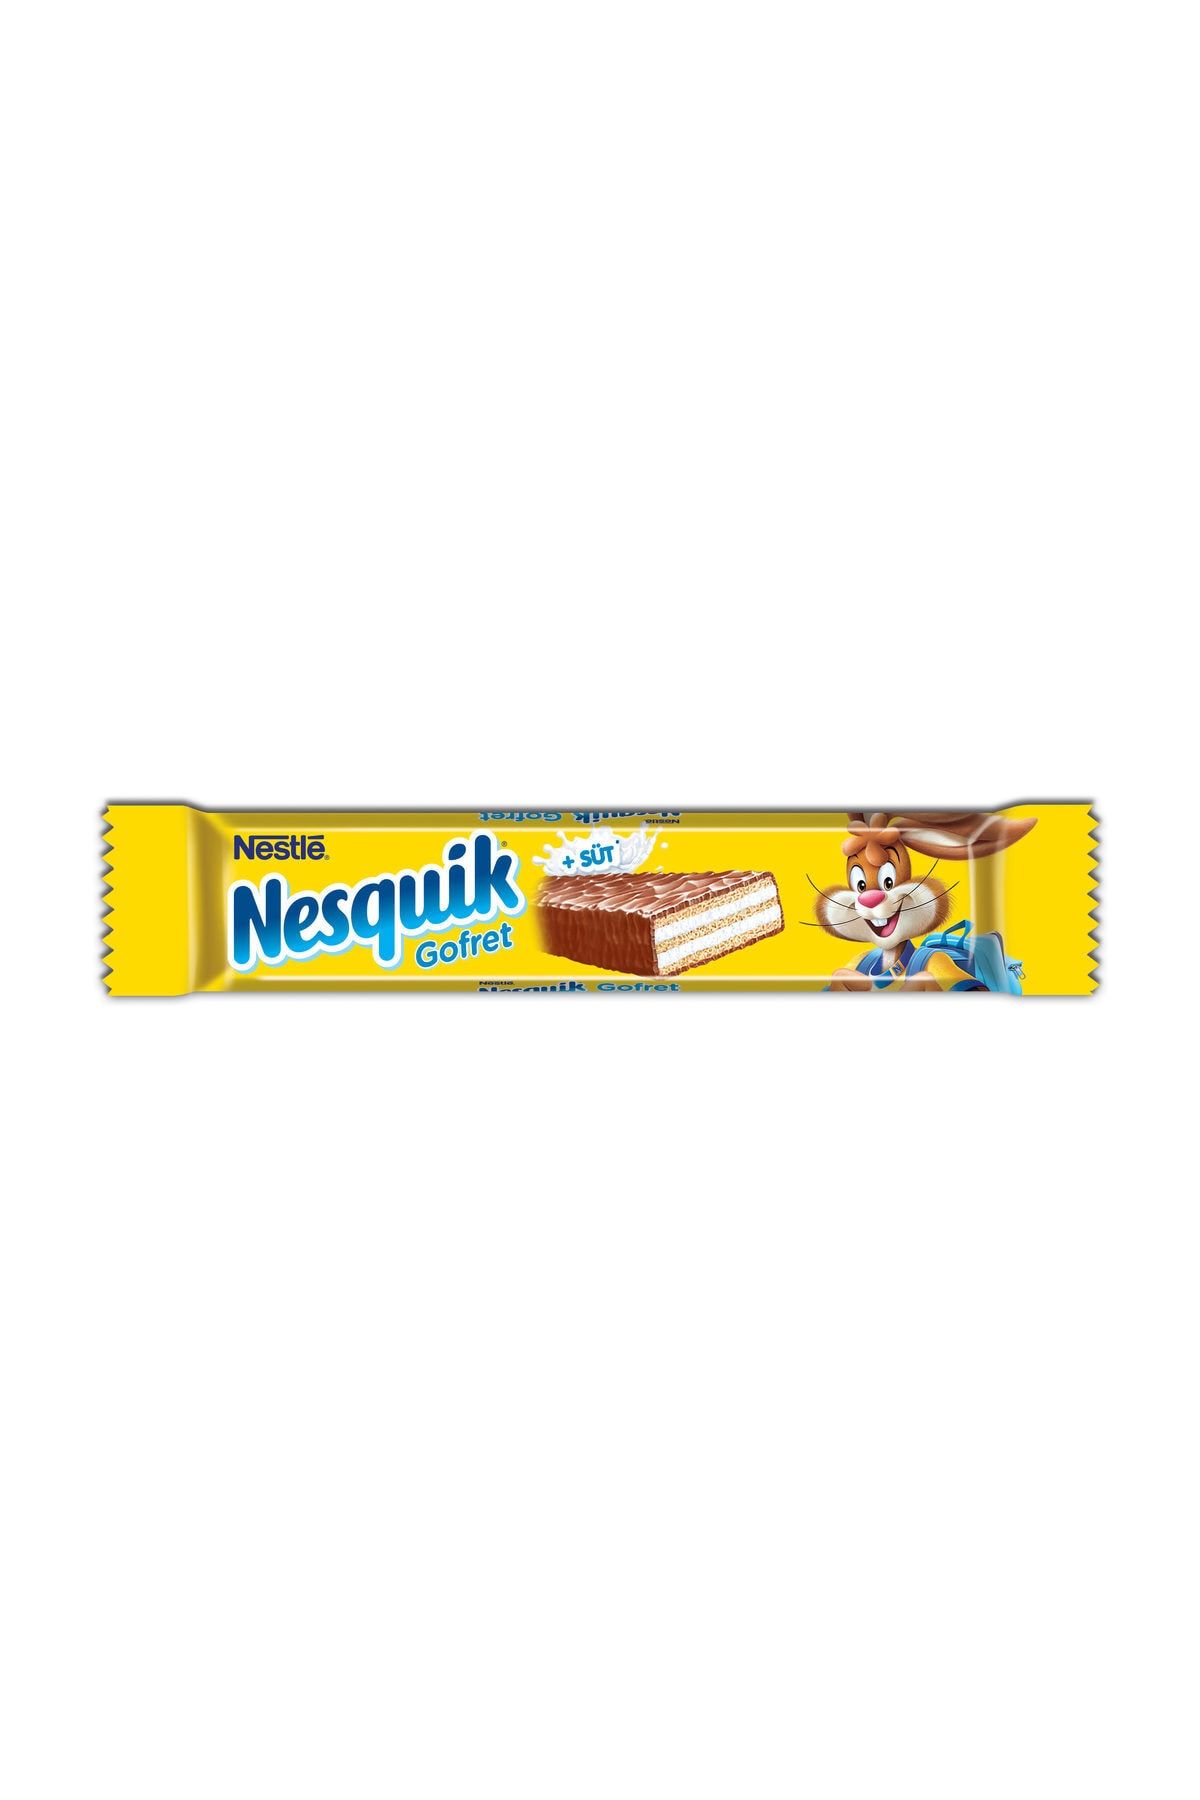 Nestlé Nesquik Gofret Sütlü Çikolata 26,7 G Fiyatları, Özellikleri ve